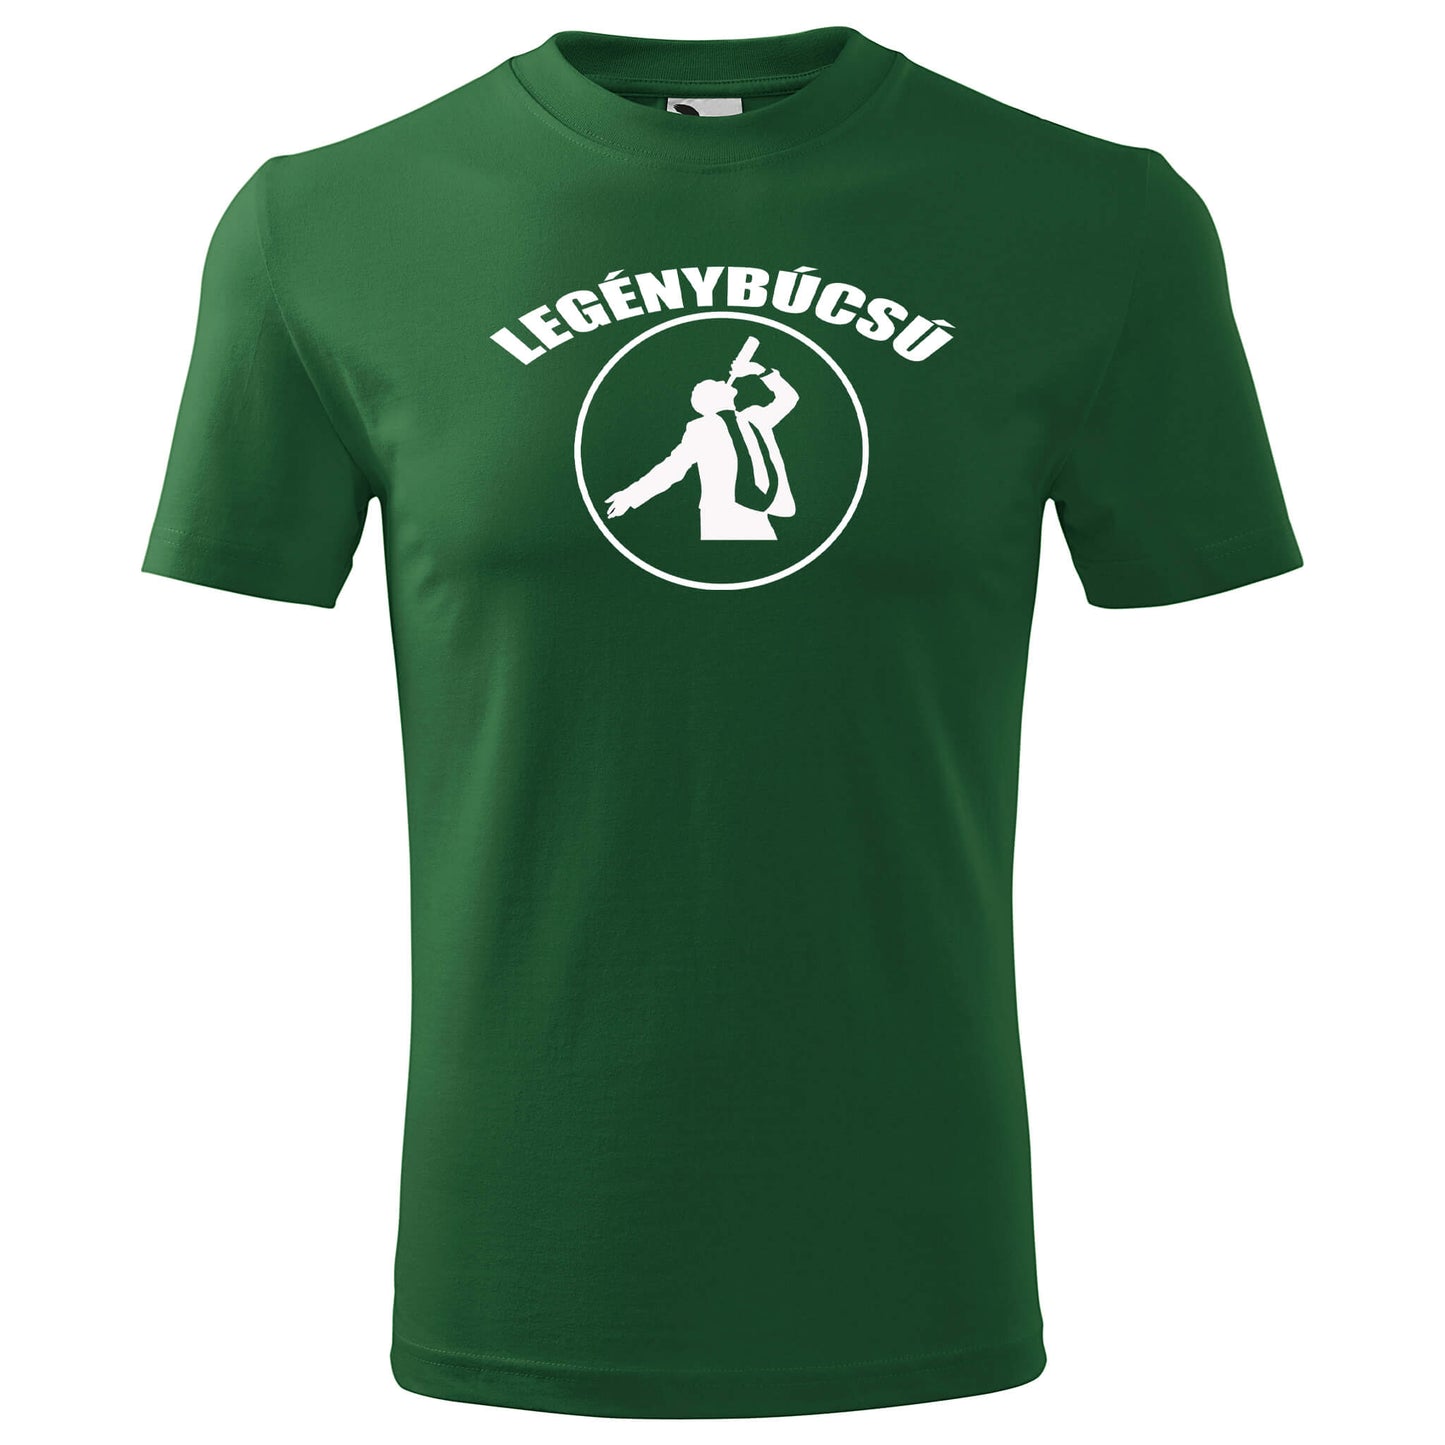 T-shirt - Legénybúcsú - Customizable - rvdesignprint